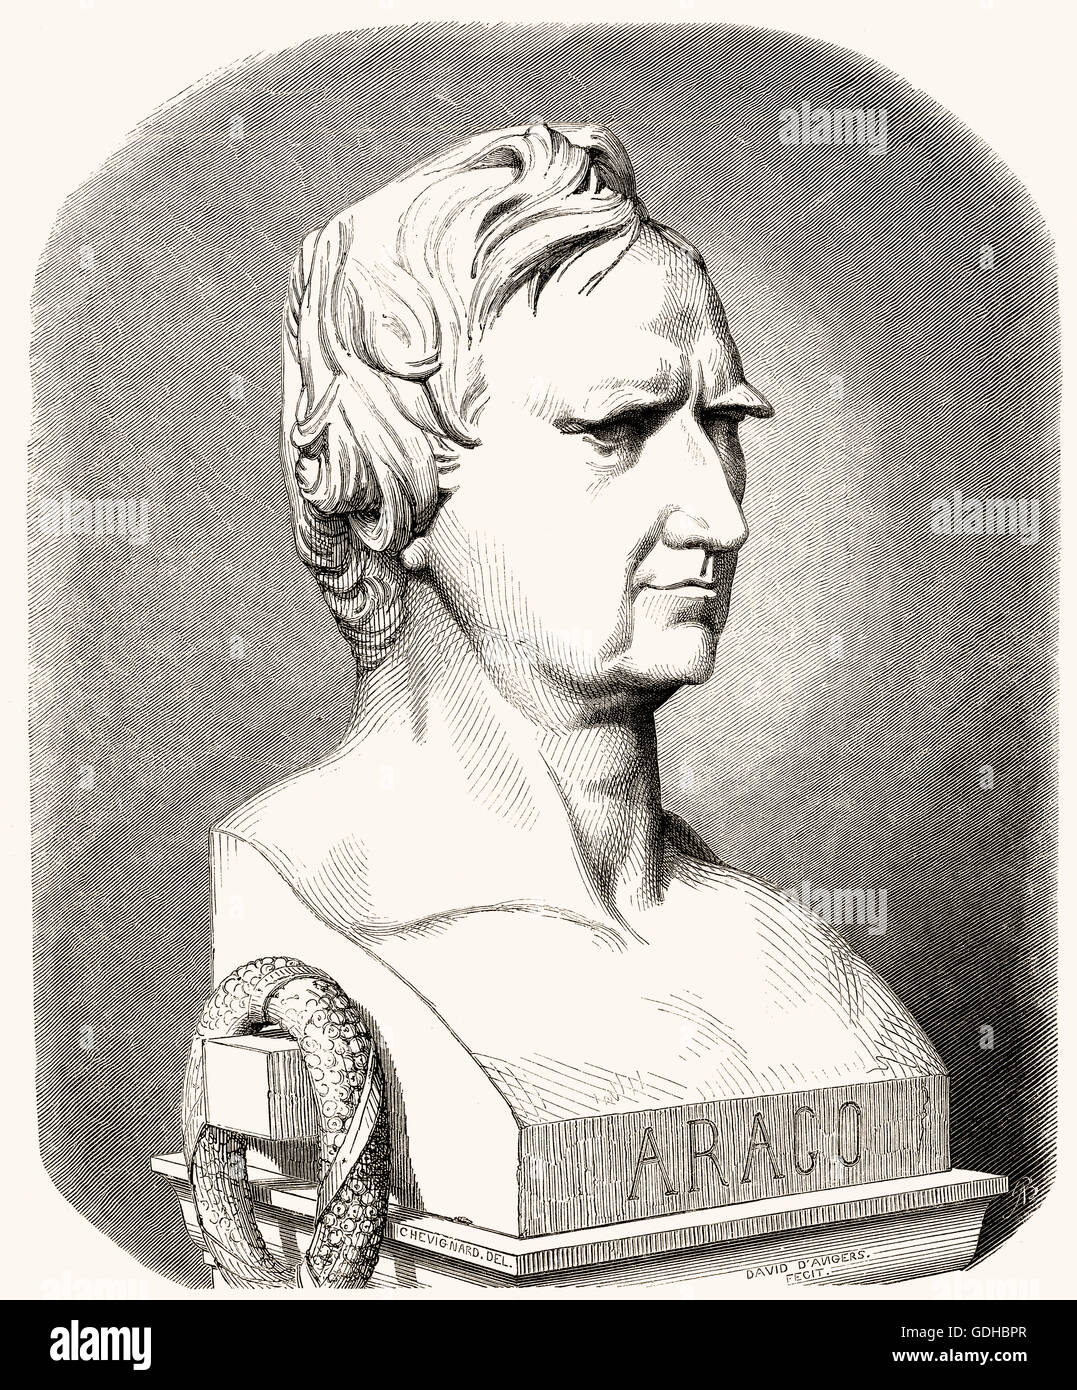 Dominique François Jean Arago ou Joan Francesc Domènec Arago, 1786-1853, un physicien et homme politique français Banque D'Images